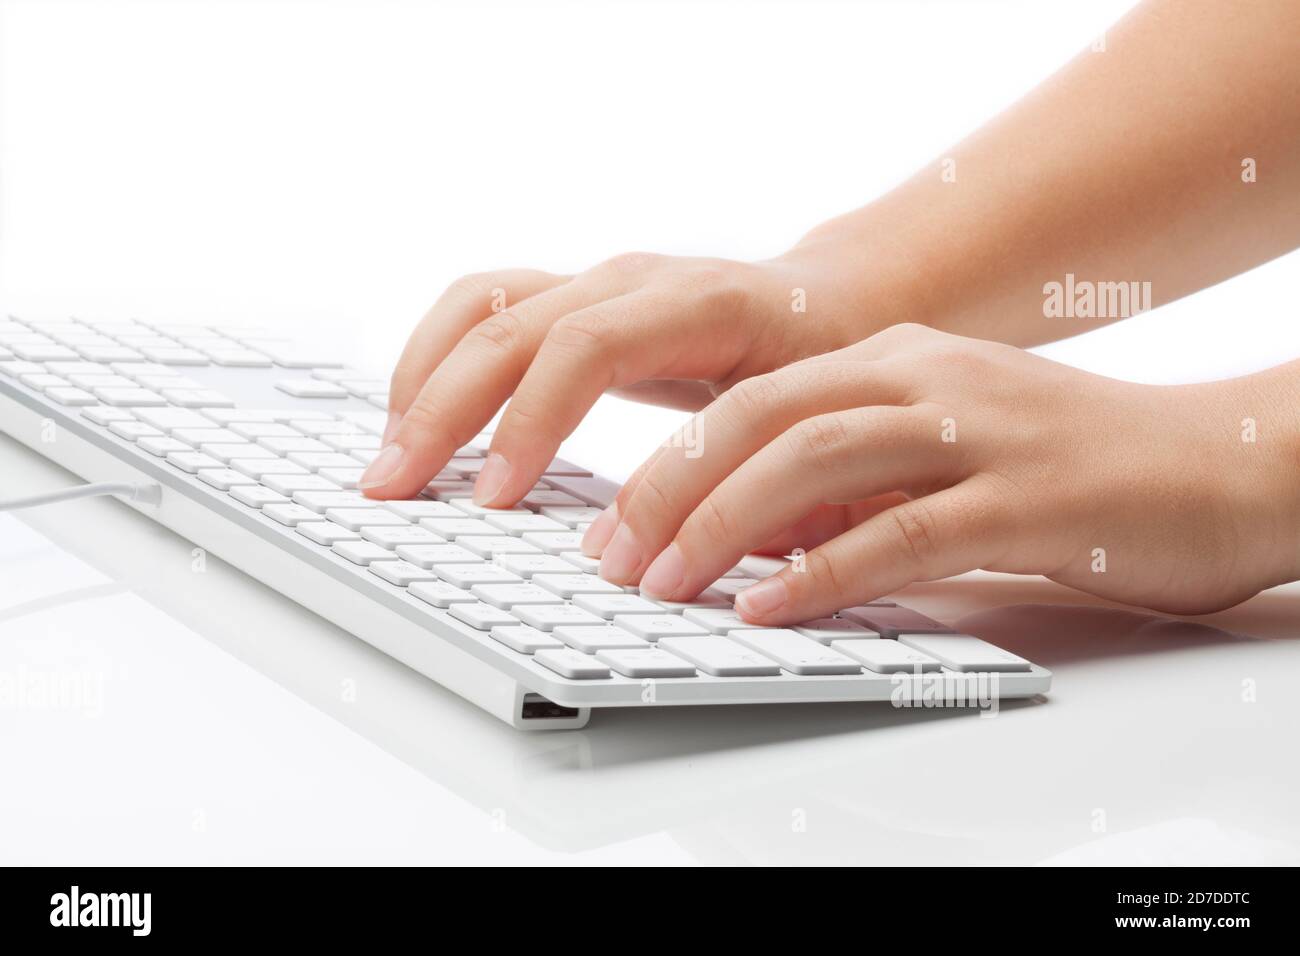 Mujer joven escribiendo en el teclado. Luz suave sobre fondo blanco Foto de stock